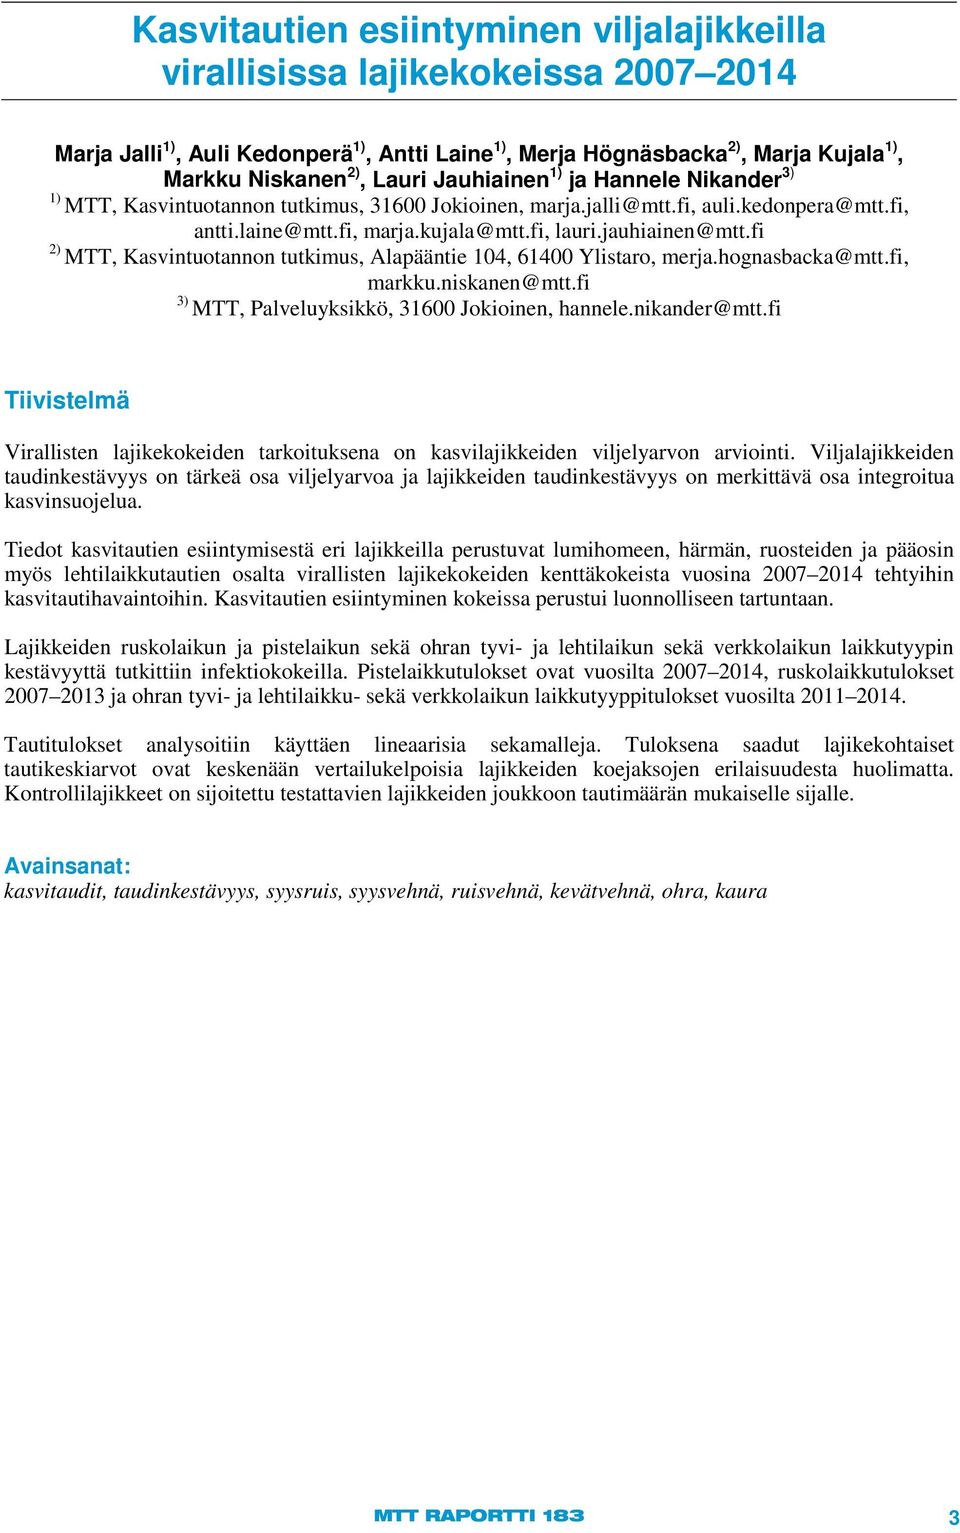 fi 2) MTT, Kasvintuotannon tutkimus, Alapääntie 104, 61400 Ylistaro, merja.hognasbacka@mtt.fi, markku.niskanen@mtt.fi 3) MTT, Palveluyksikkö, 31600 Jokioinen, hannele.nikander@mtt.